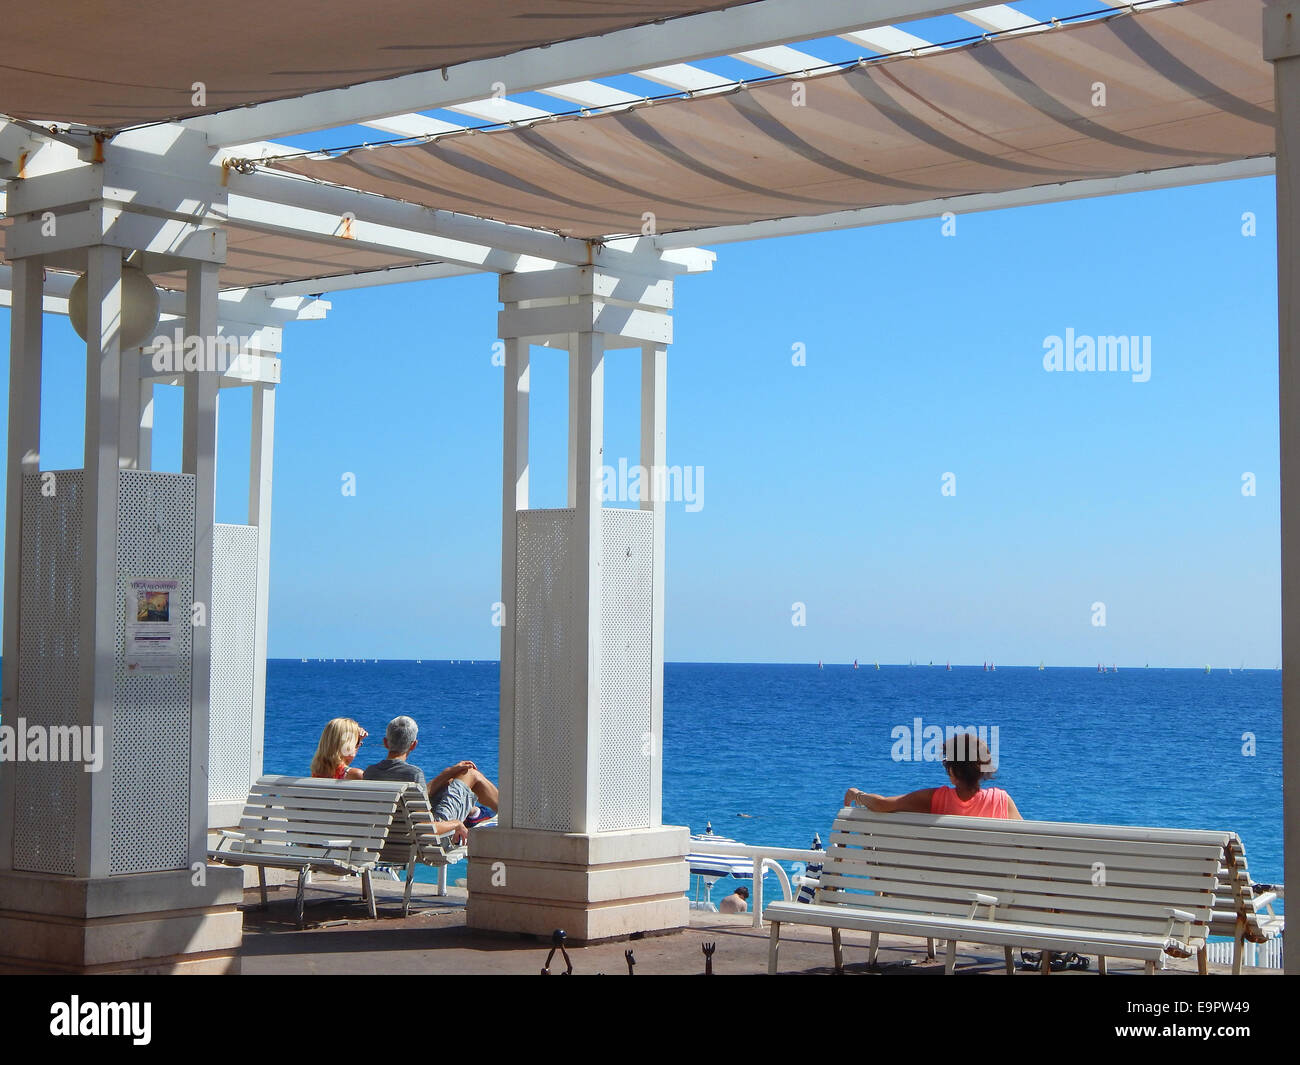 Touristen und Einheimische geniessen die Sonne an der Uferpromenade Promenade des Anglais in Nizza an der franzoesischen Cote d' Azur. Es gibt keinen besseren Ort, um die merkwuerdige Mischung von Stadt und Strand, die Nizza ausmacht in sich aufzunehmen. Stock Photo